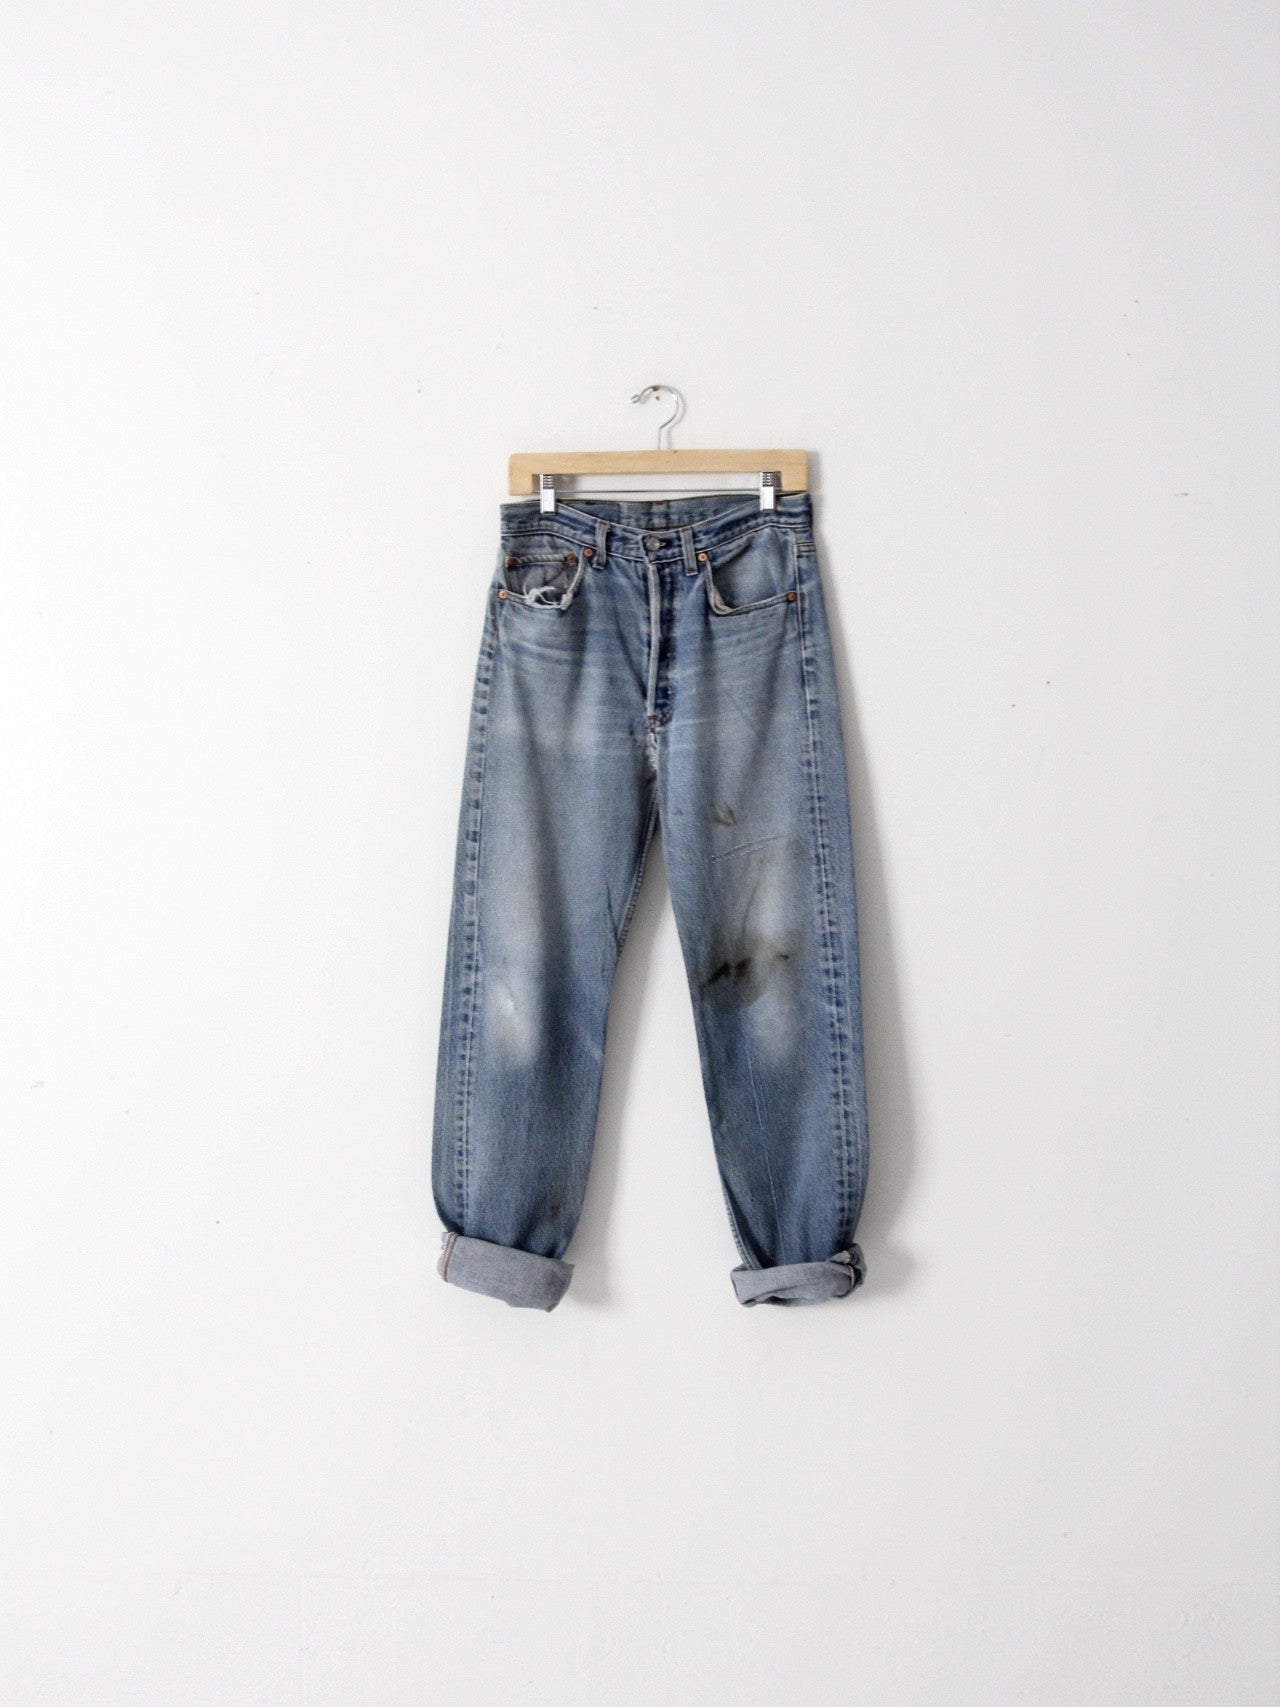 vintage Levi's 501 jeans, 31 x 34